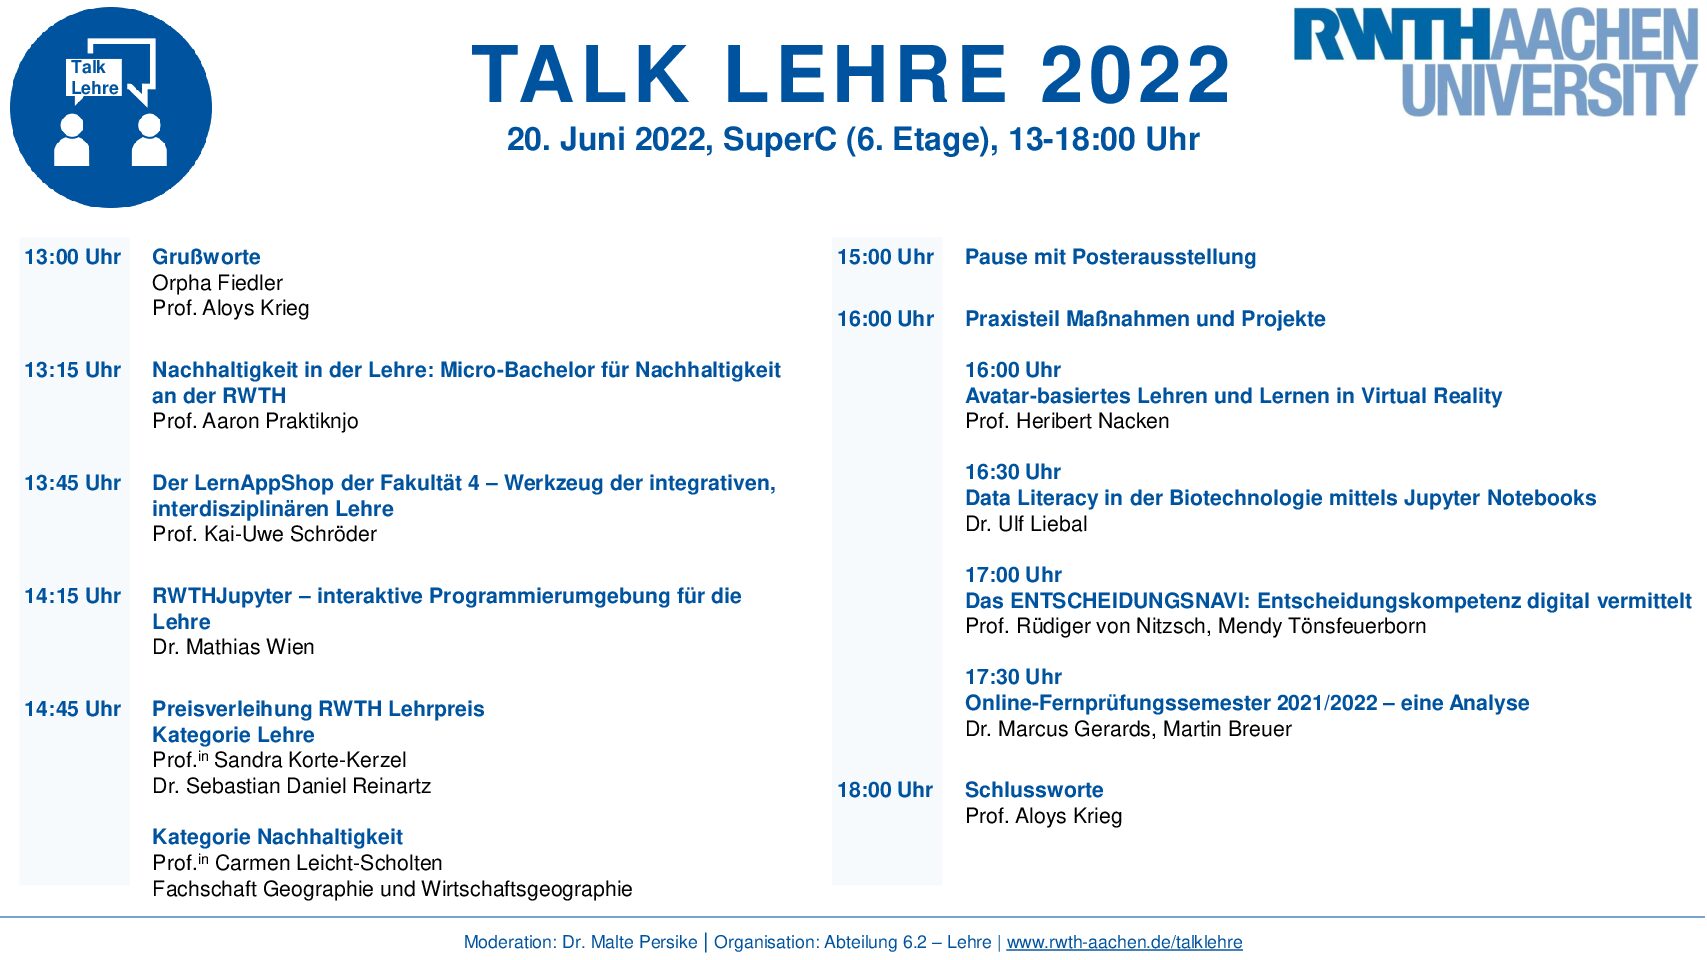 Veranstaltungshinweis: Der Talk Lehre 2022 wieder in Präsenz